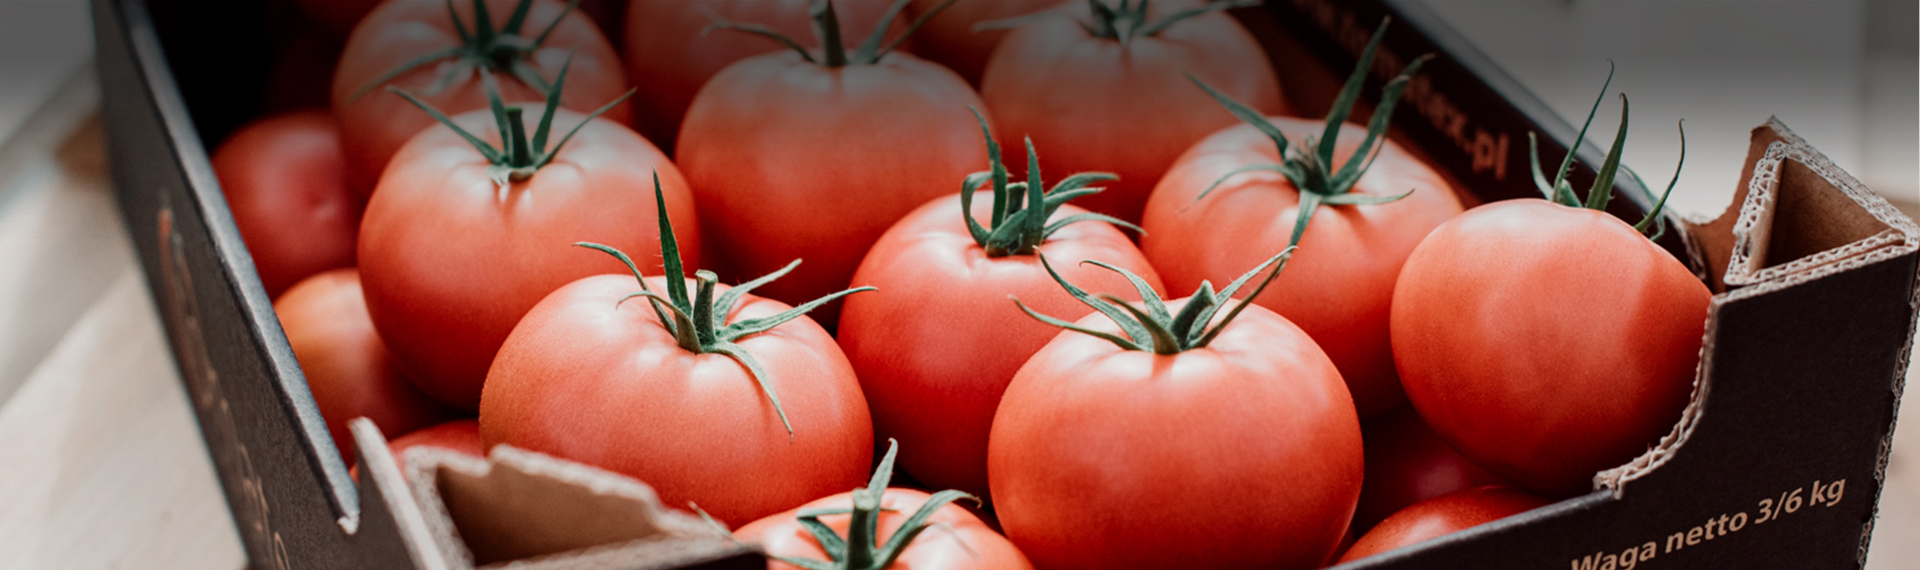 Slajd #3 - Pomidory w skrzynce